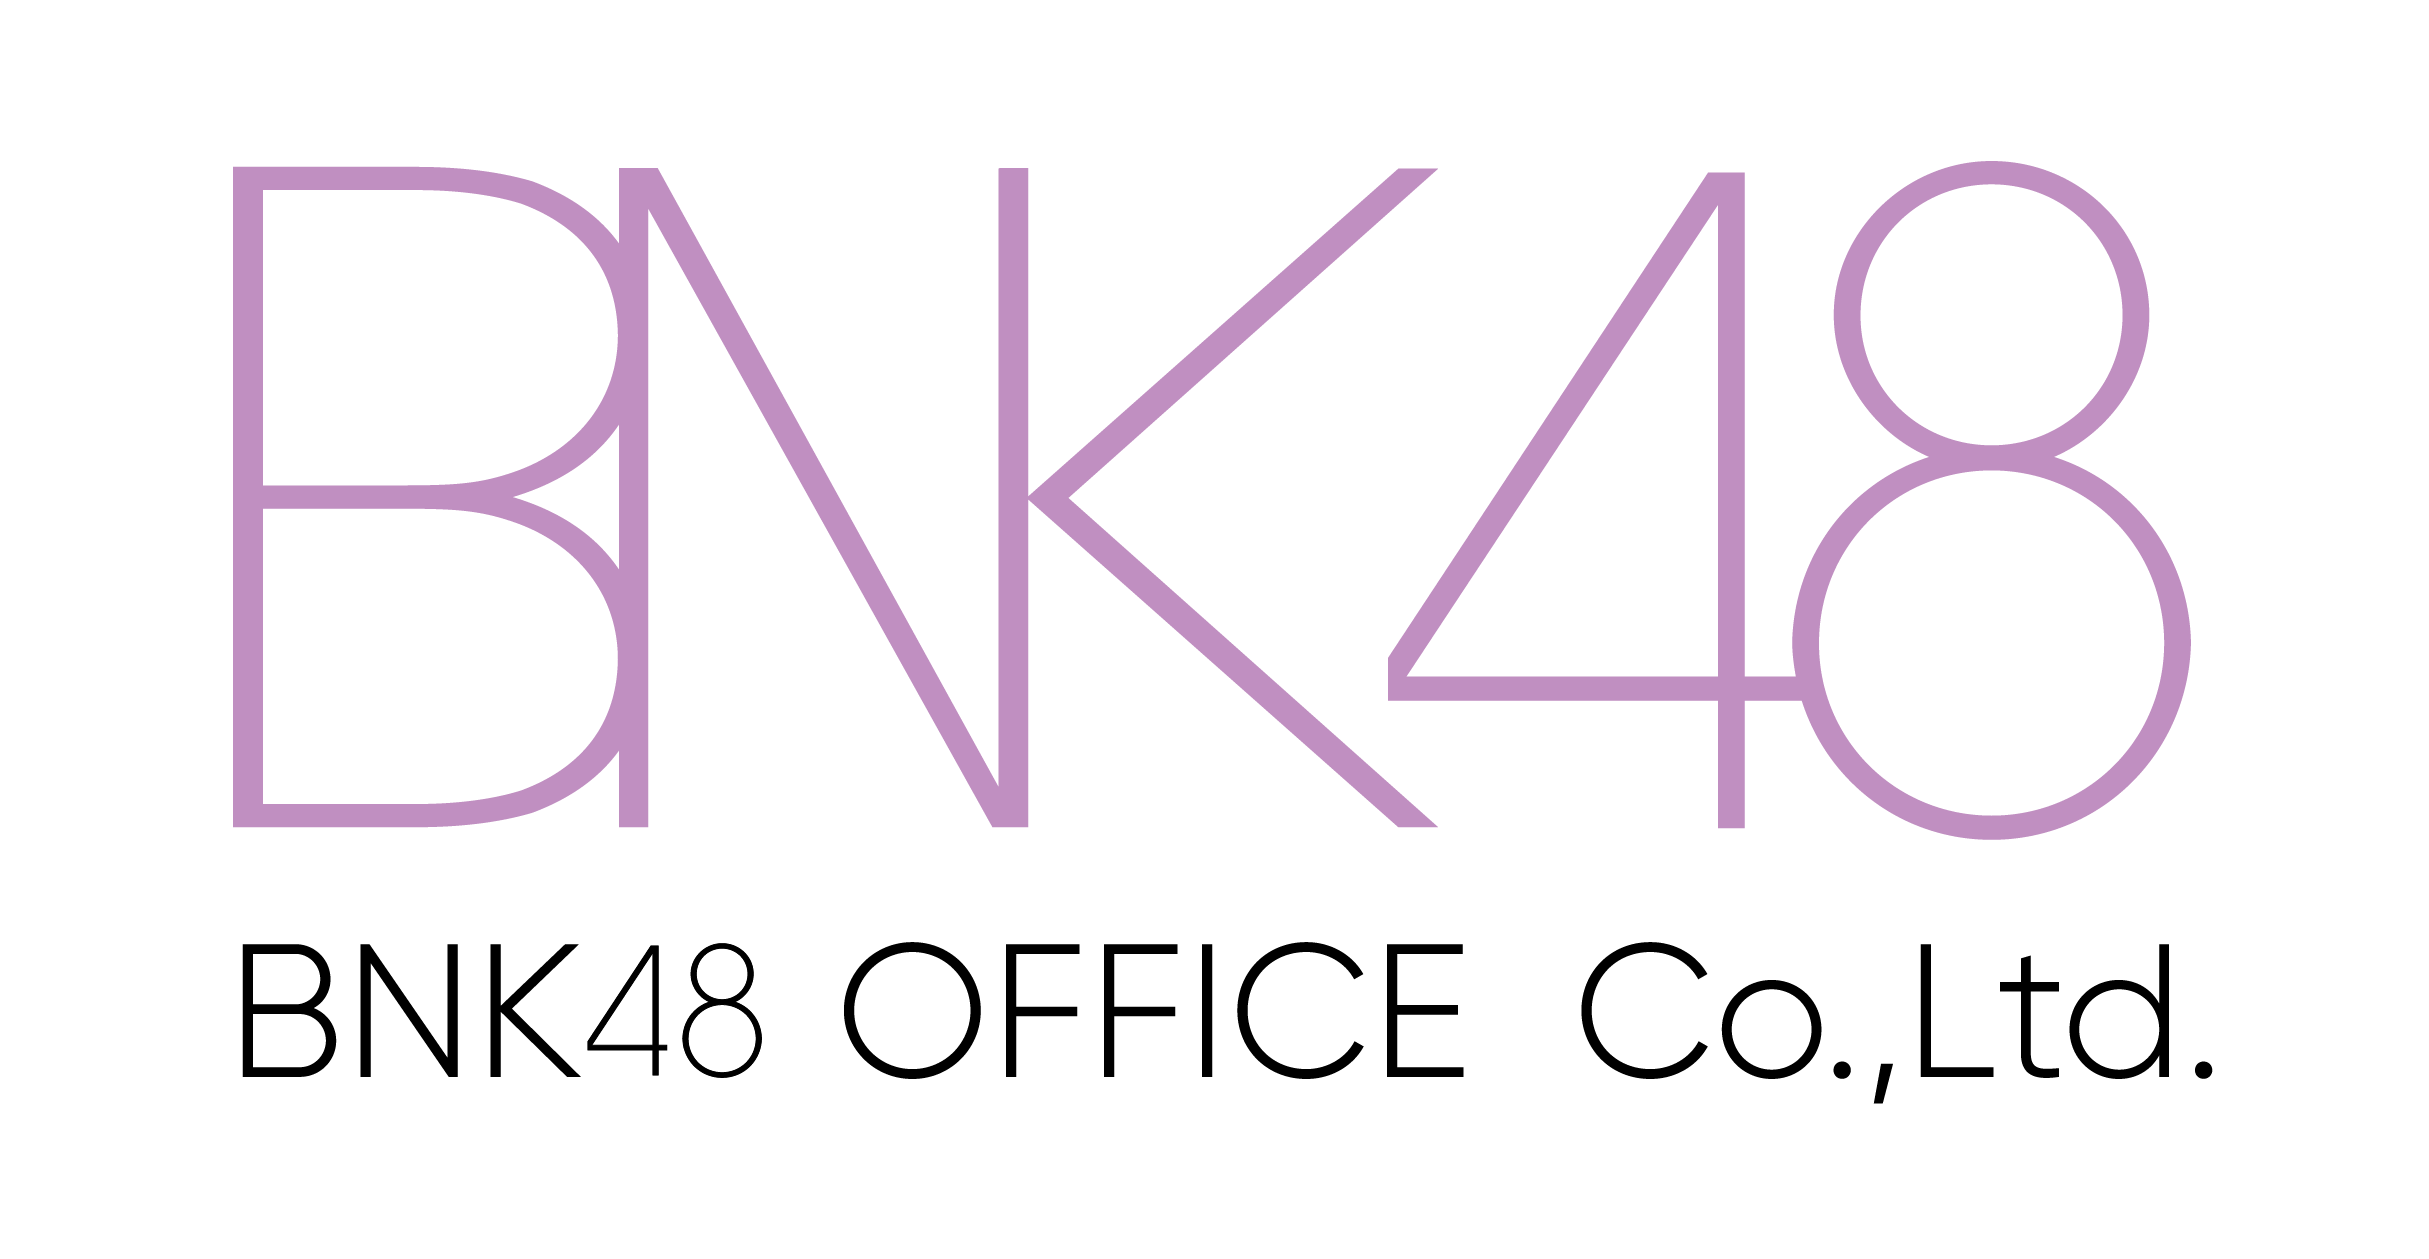 บริษัท  บีเอ็นเค48 ออฟฟิศ จำกัด logo โลโก้